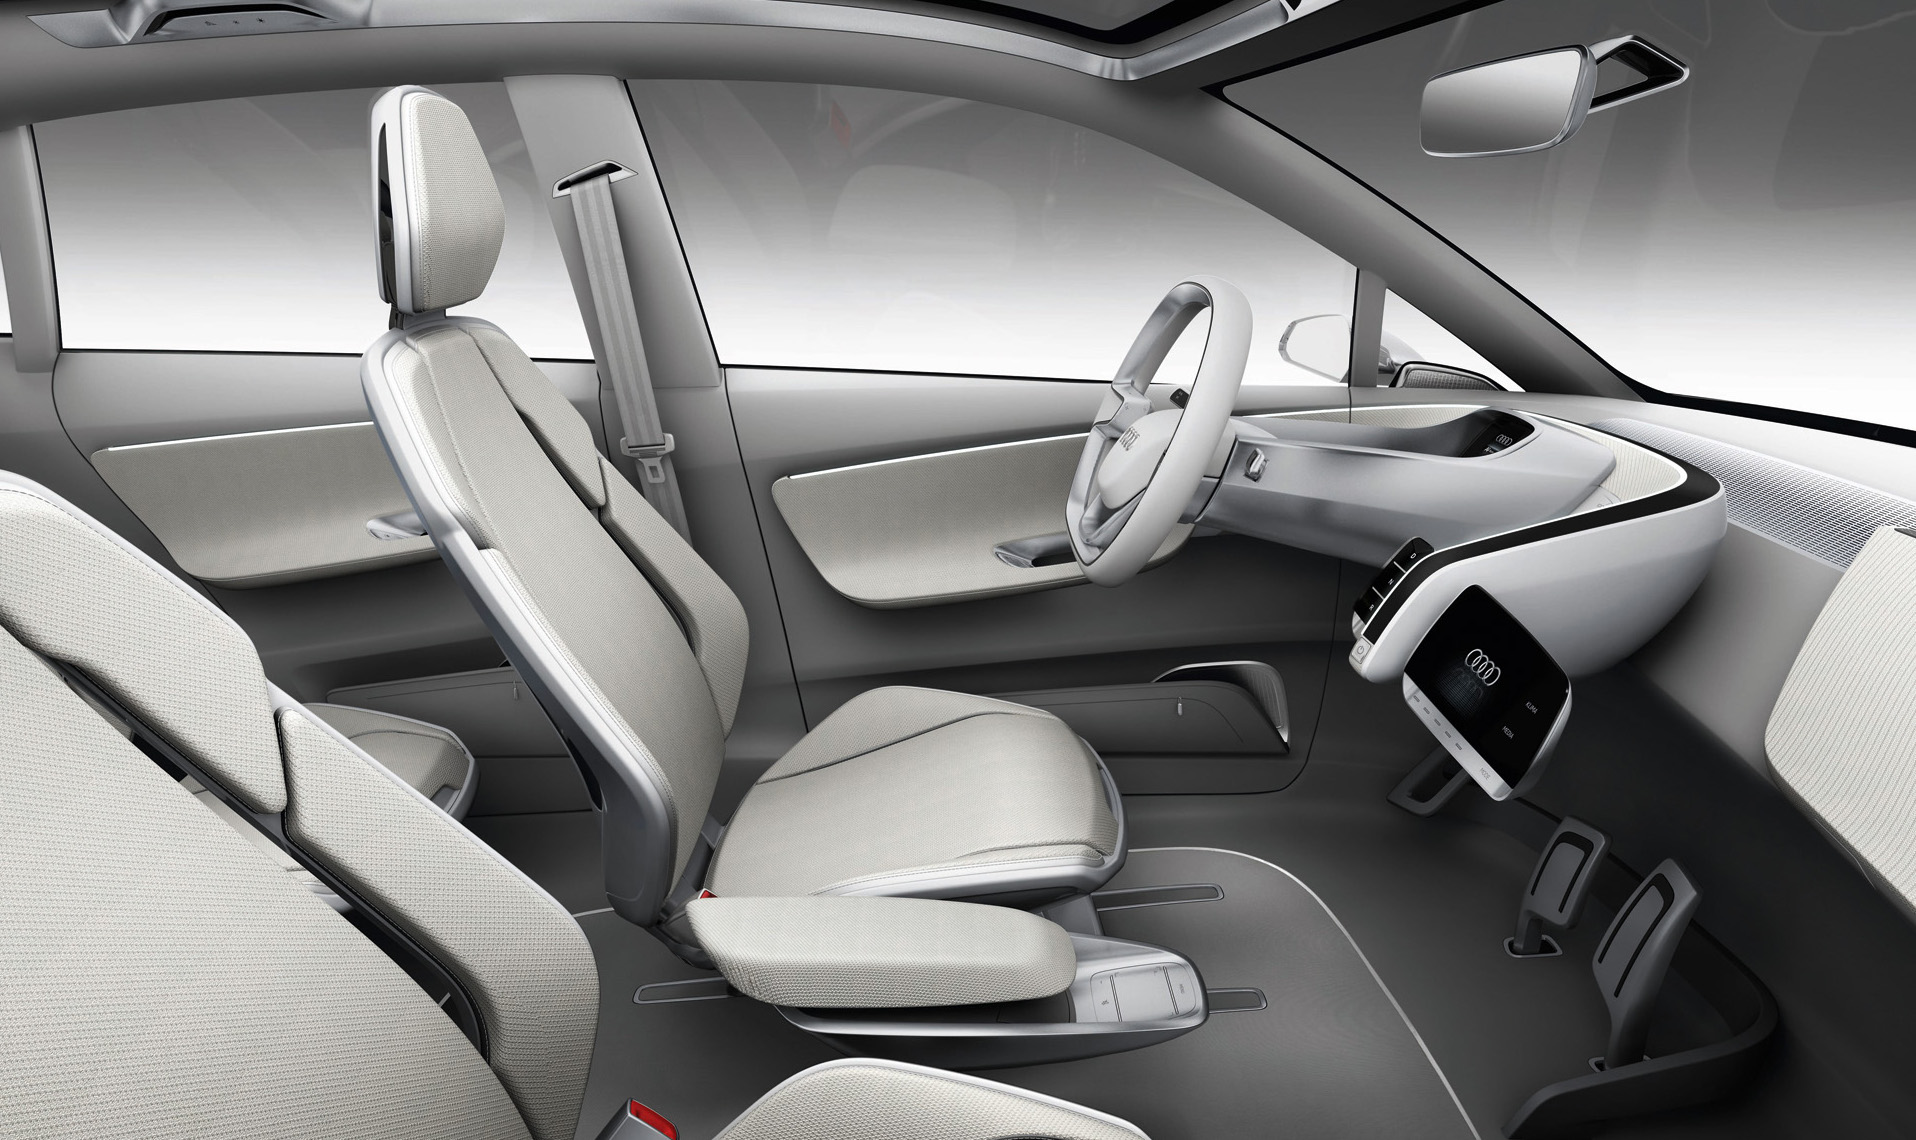 
Image Intrieur - Audi A2 Concept
 